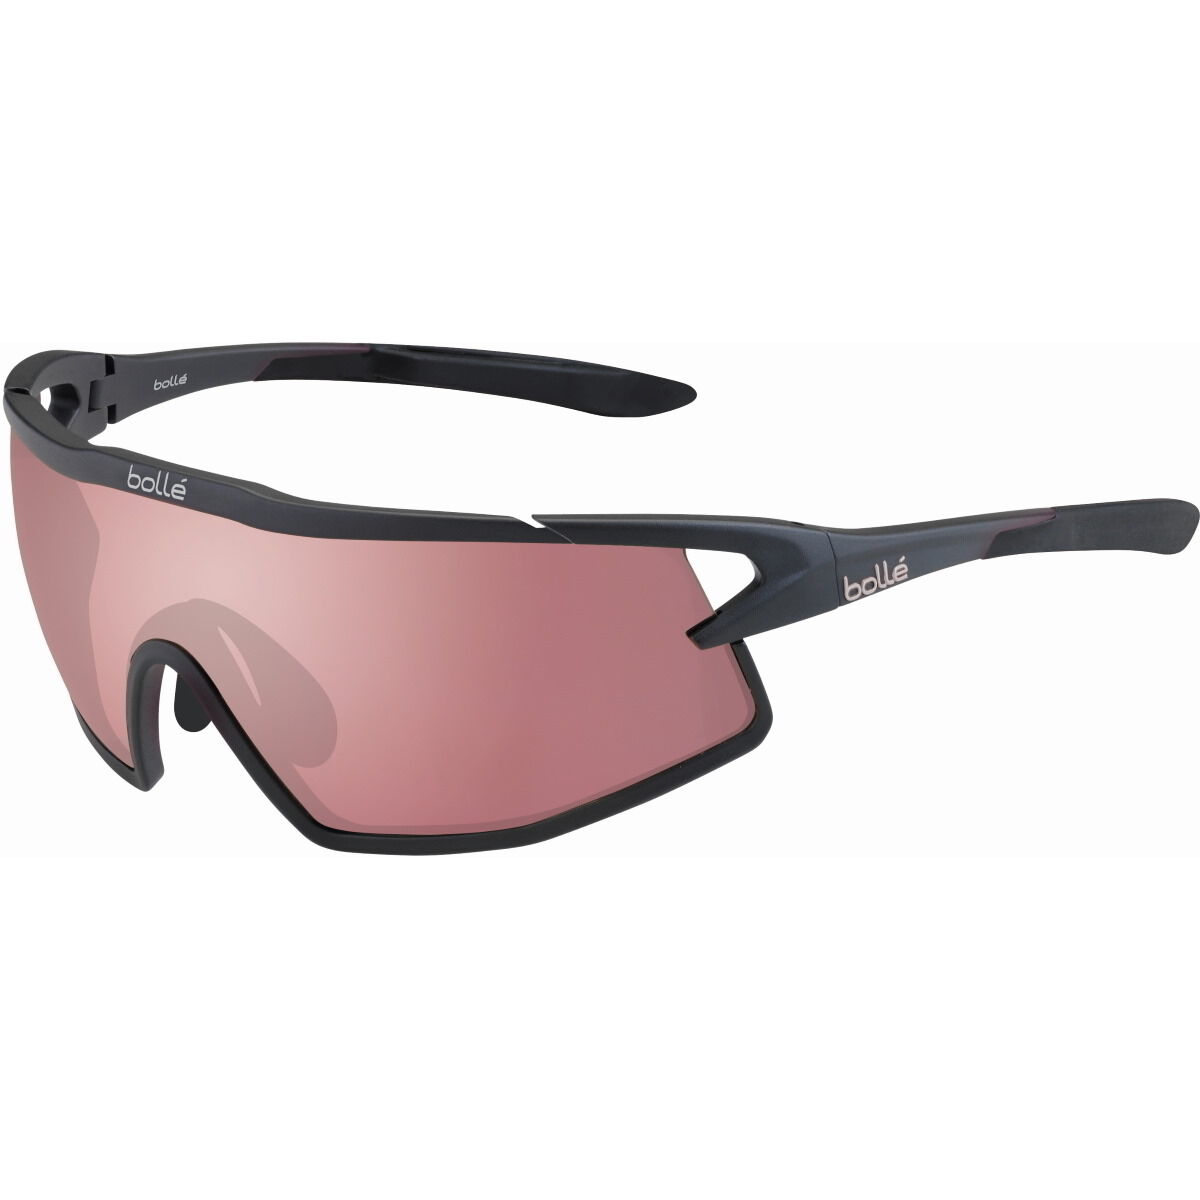 Bollé B-ROCK PRO Cycling Sunglasses - NXT® Photochromic Lens Bollé